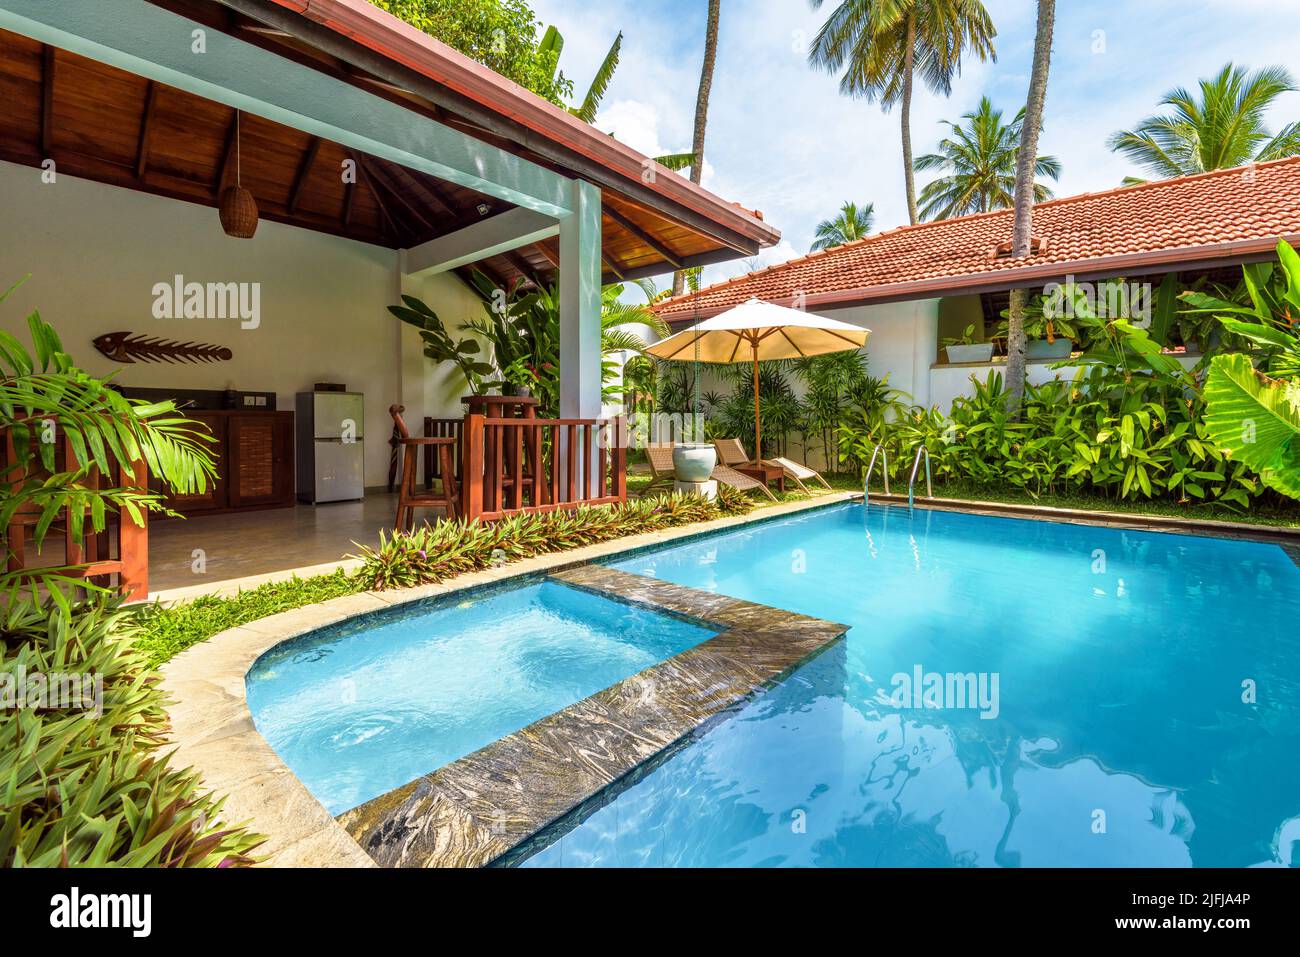 Sri Lanka - Nov 4, 2017: Luxus-Haus mit Pool und Terrasse im Hinterhof. Bungalow im indischen oder karibischen Stil und Garten im Innenhof. Schöne Villa auf t Stockfoto